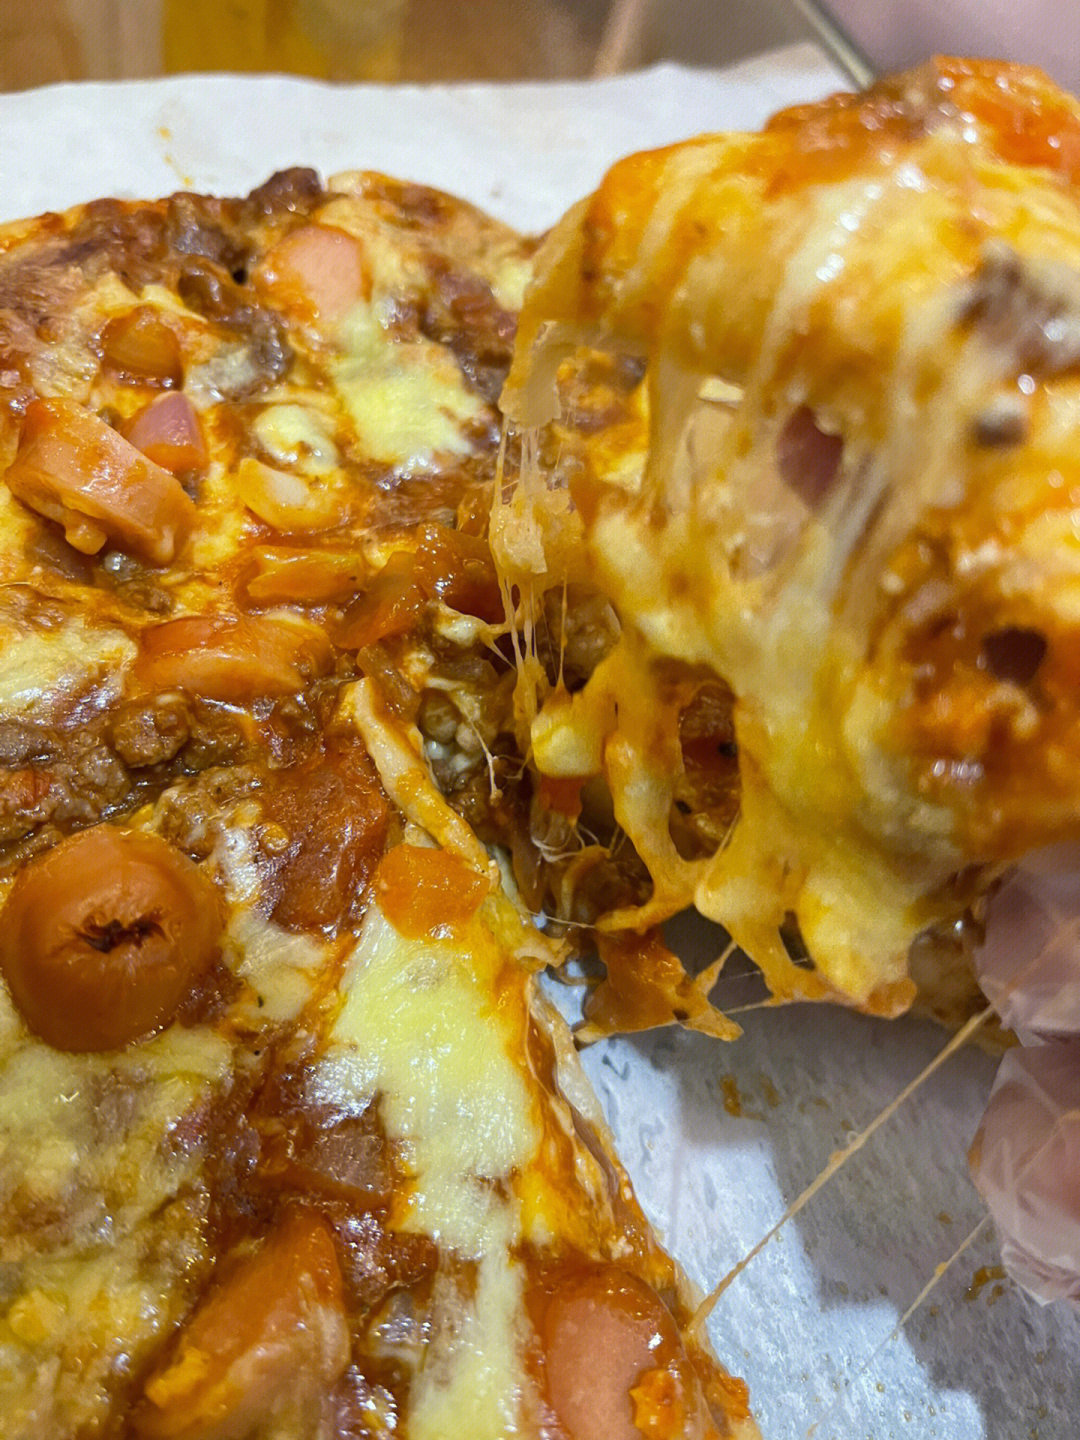 意大利肉酱爆炸芝士披萨